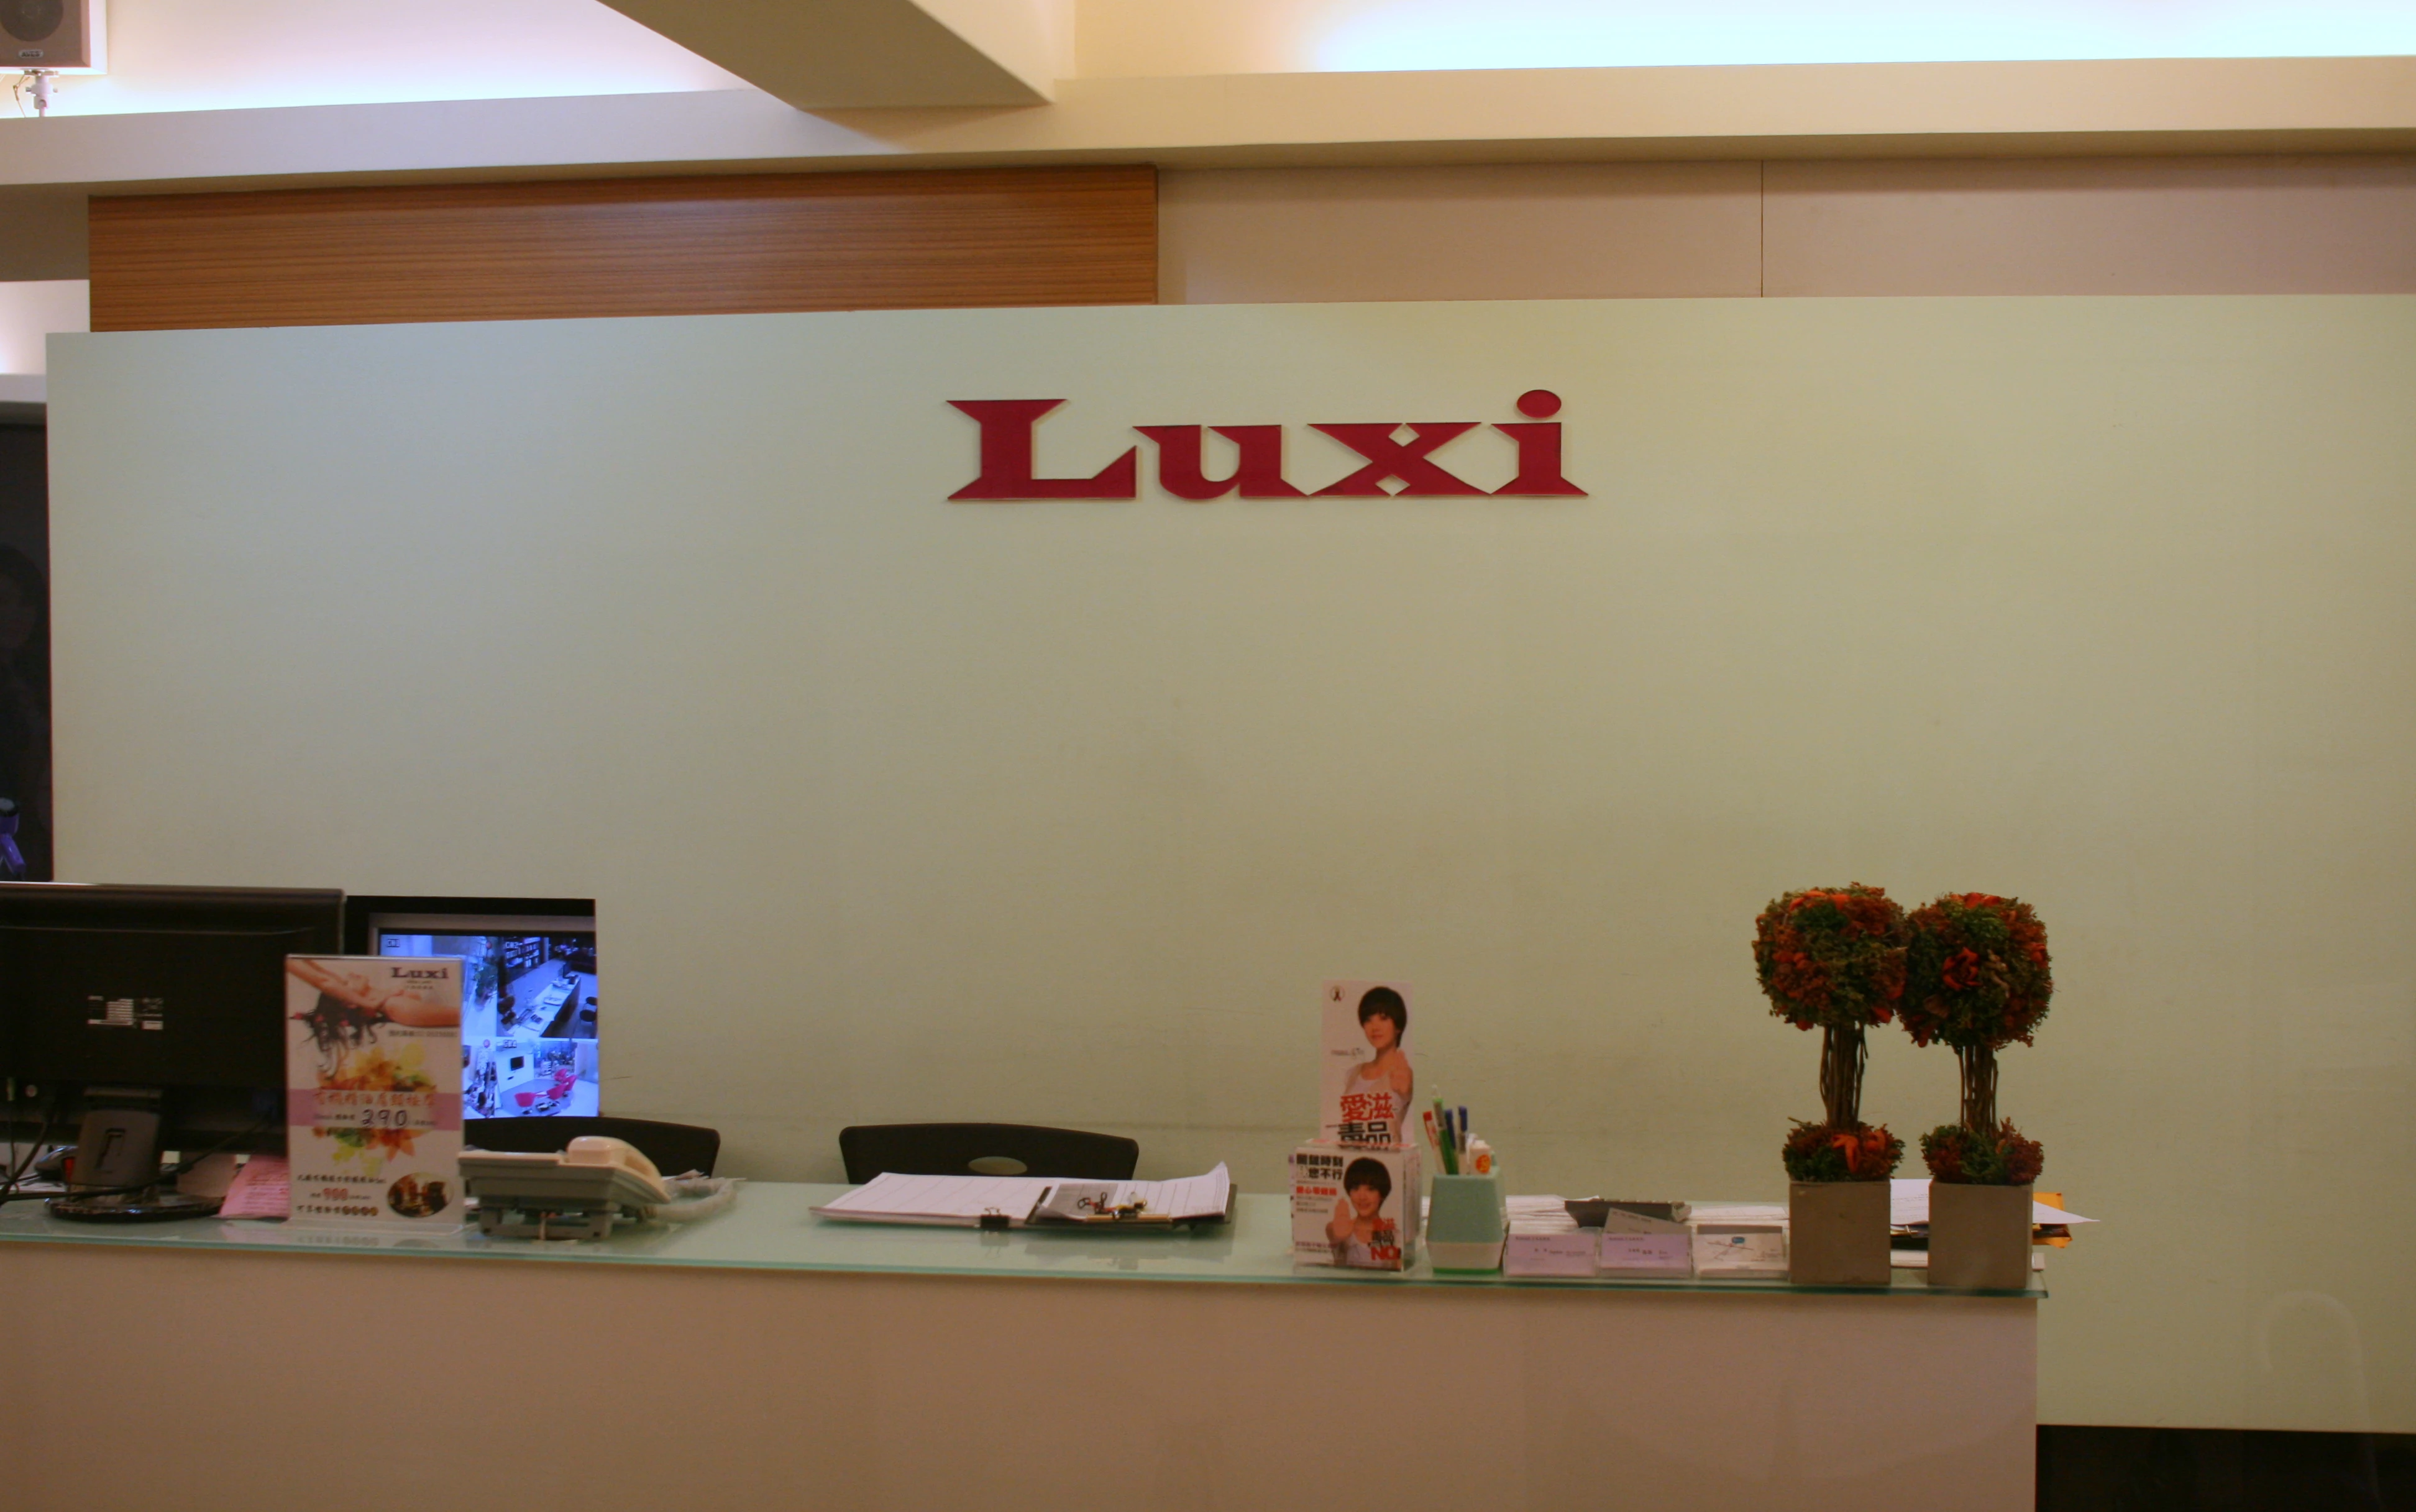 關於luxi1